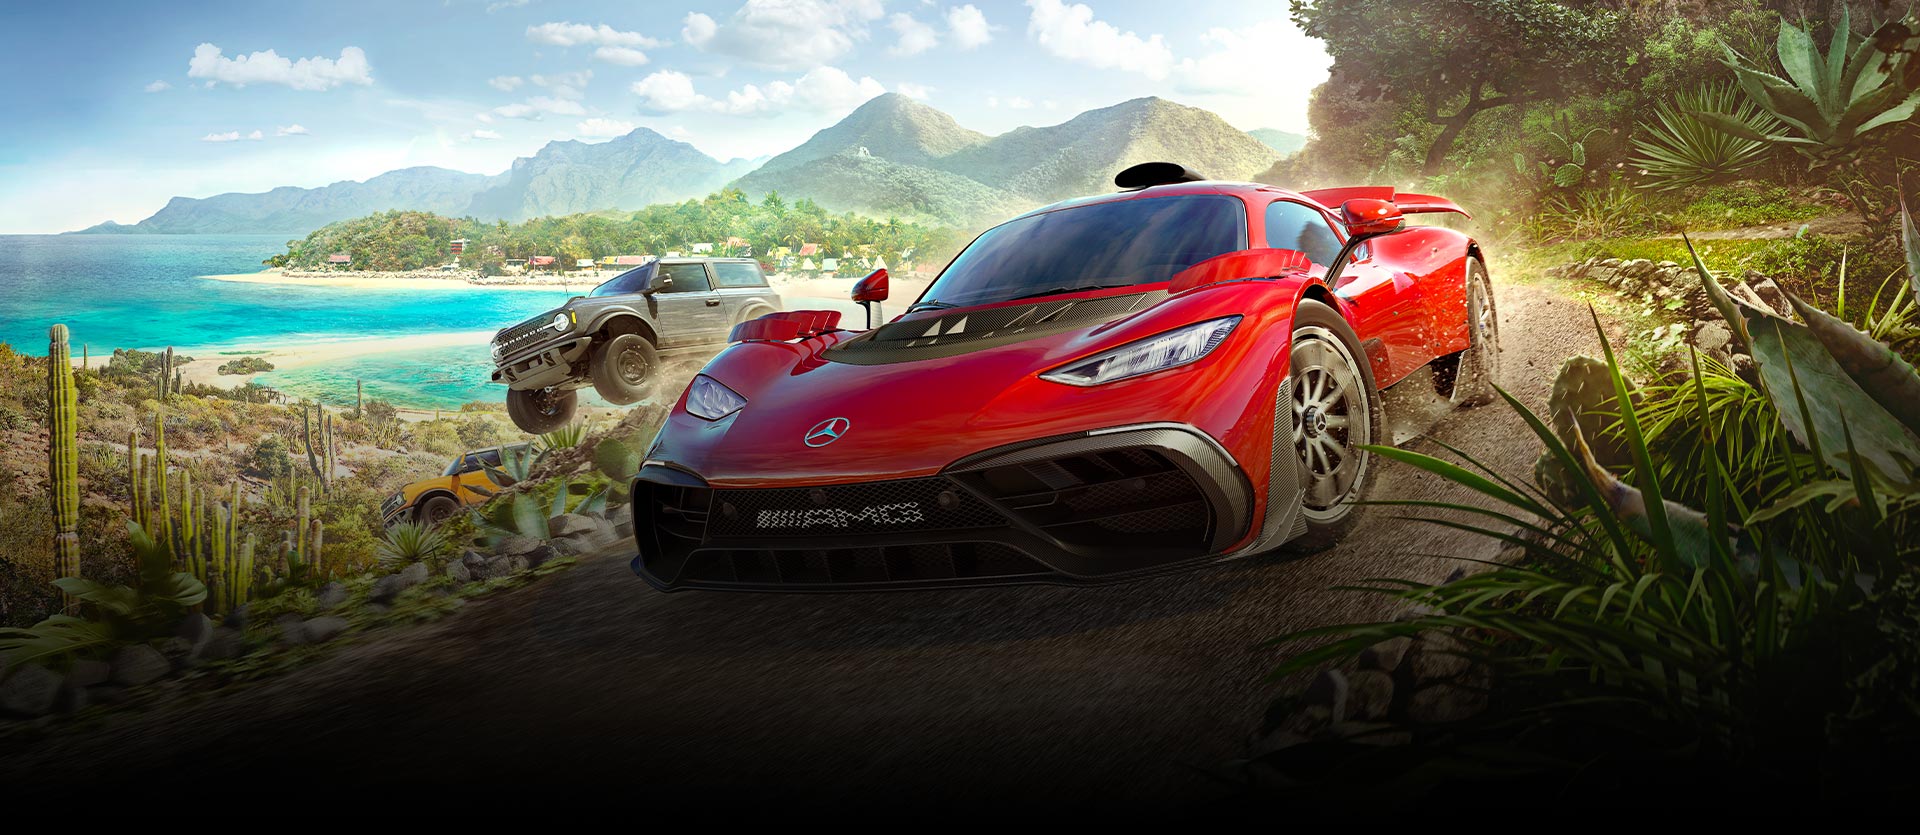 Vozy ze hry Forza Horizon 5 jedoucí ve vysoké rychlosti po špinavé silnici kolem vody a spousty rostlin.